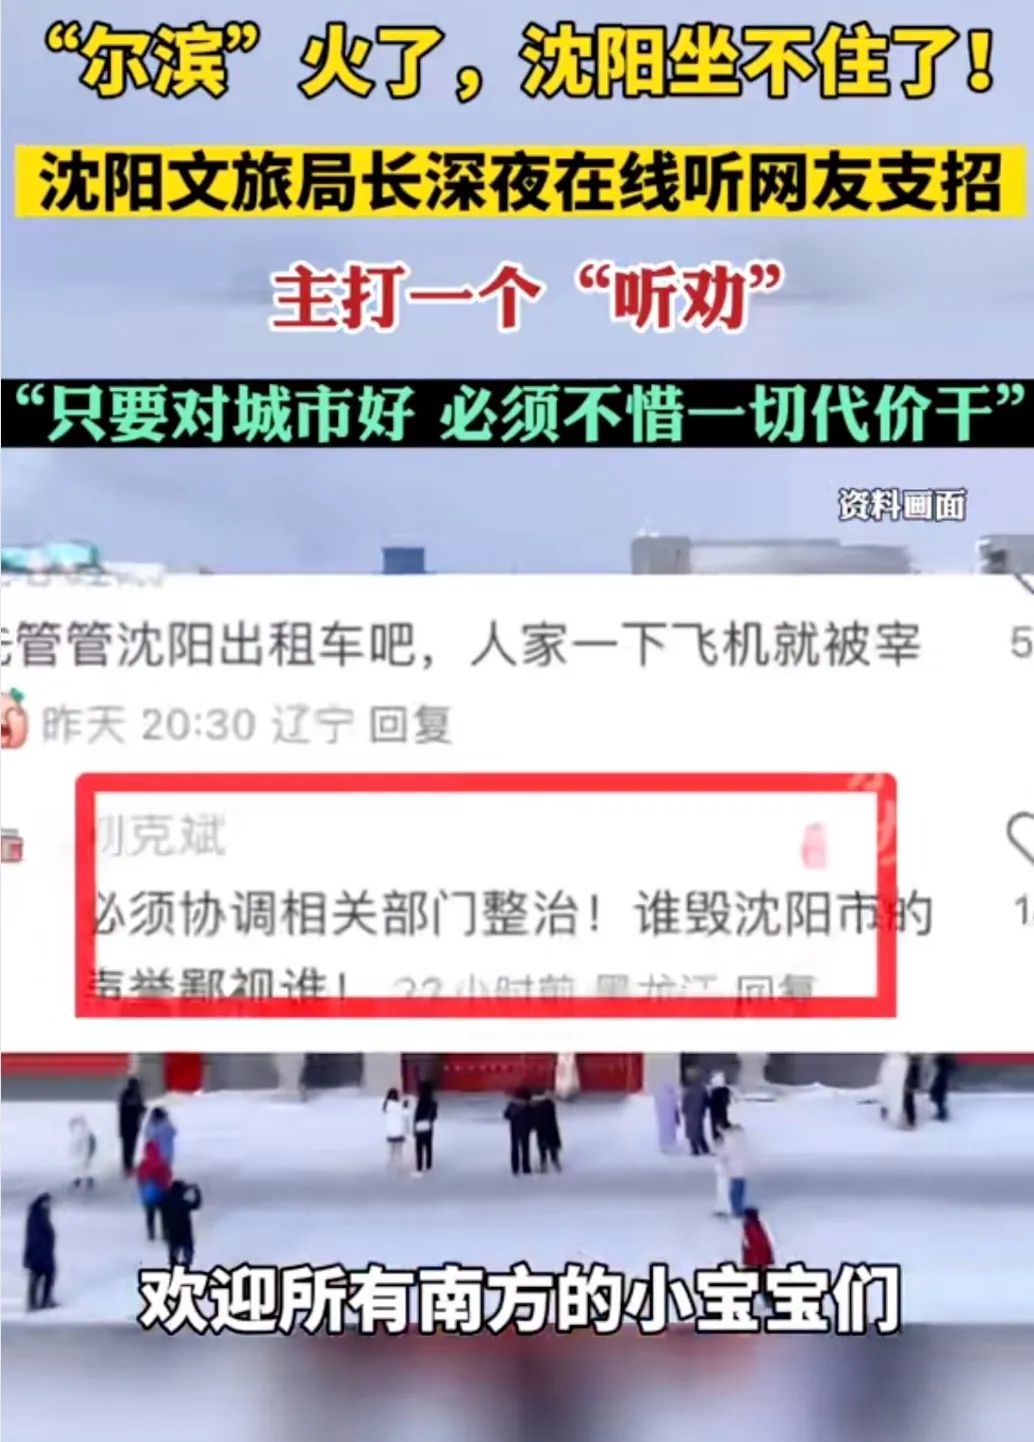 哈尔滨冰雪旅游火爆出圈，社交媒体担当何种角色？